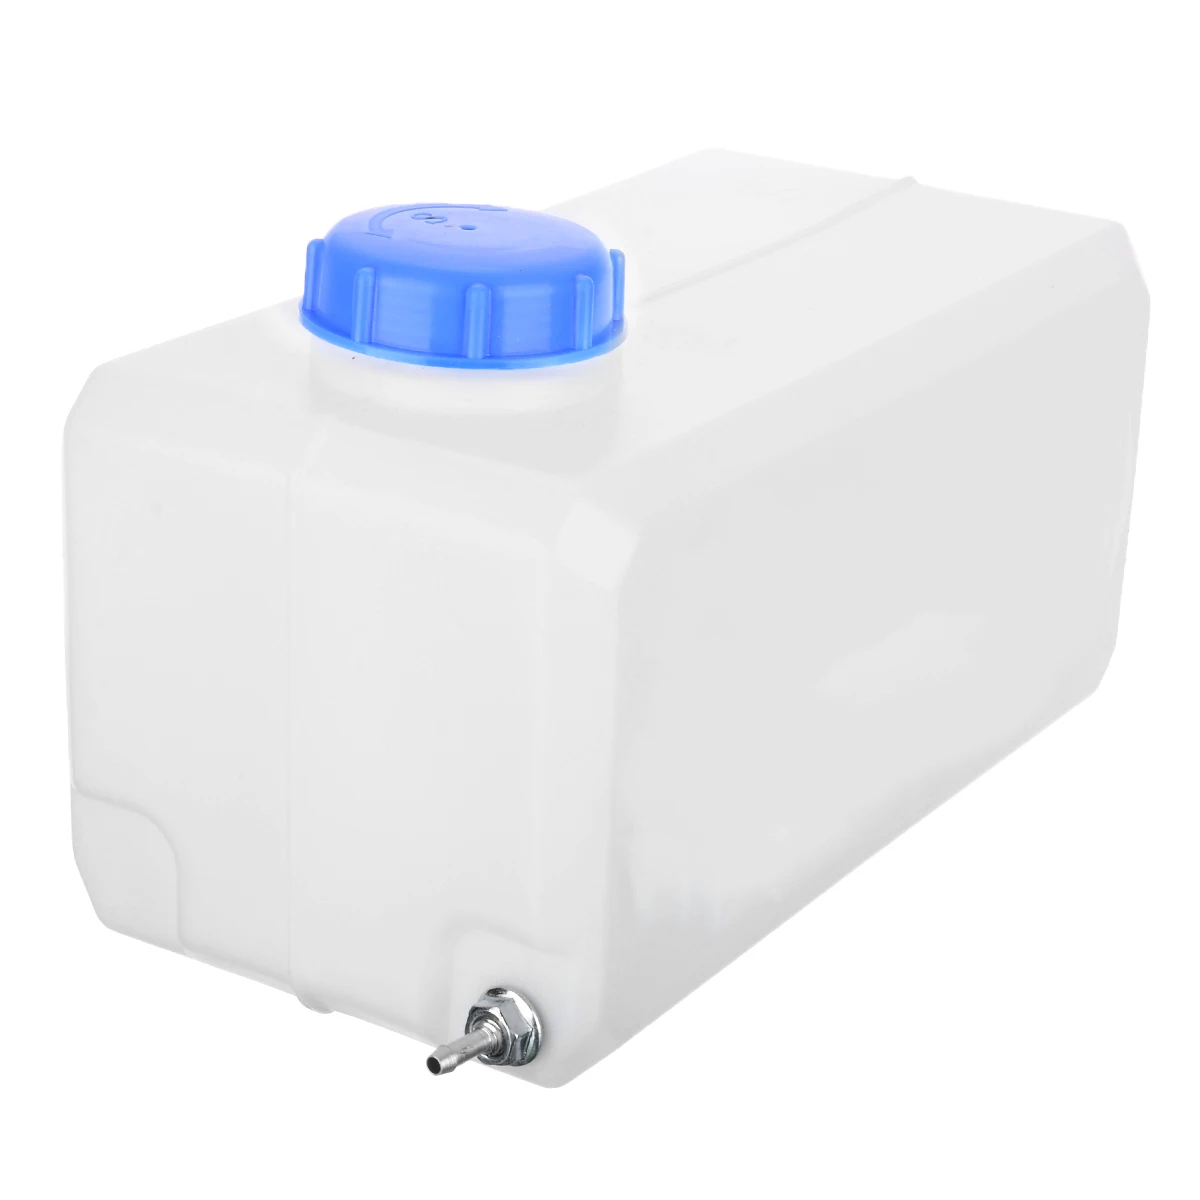 Топливный бак 5.5L масляный бензин D-iesels бензин пластик Storge бак для воды лодка автомобиль грузовик парковка нагреватель аксессуары